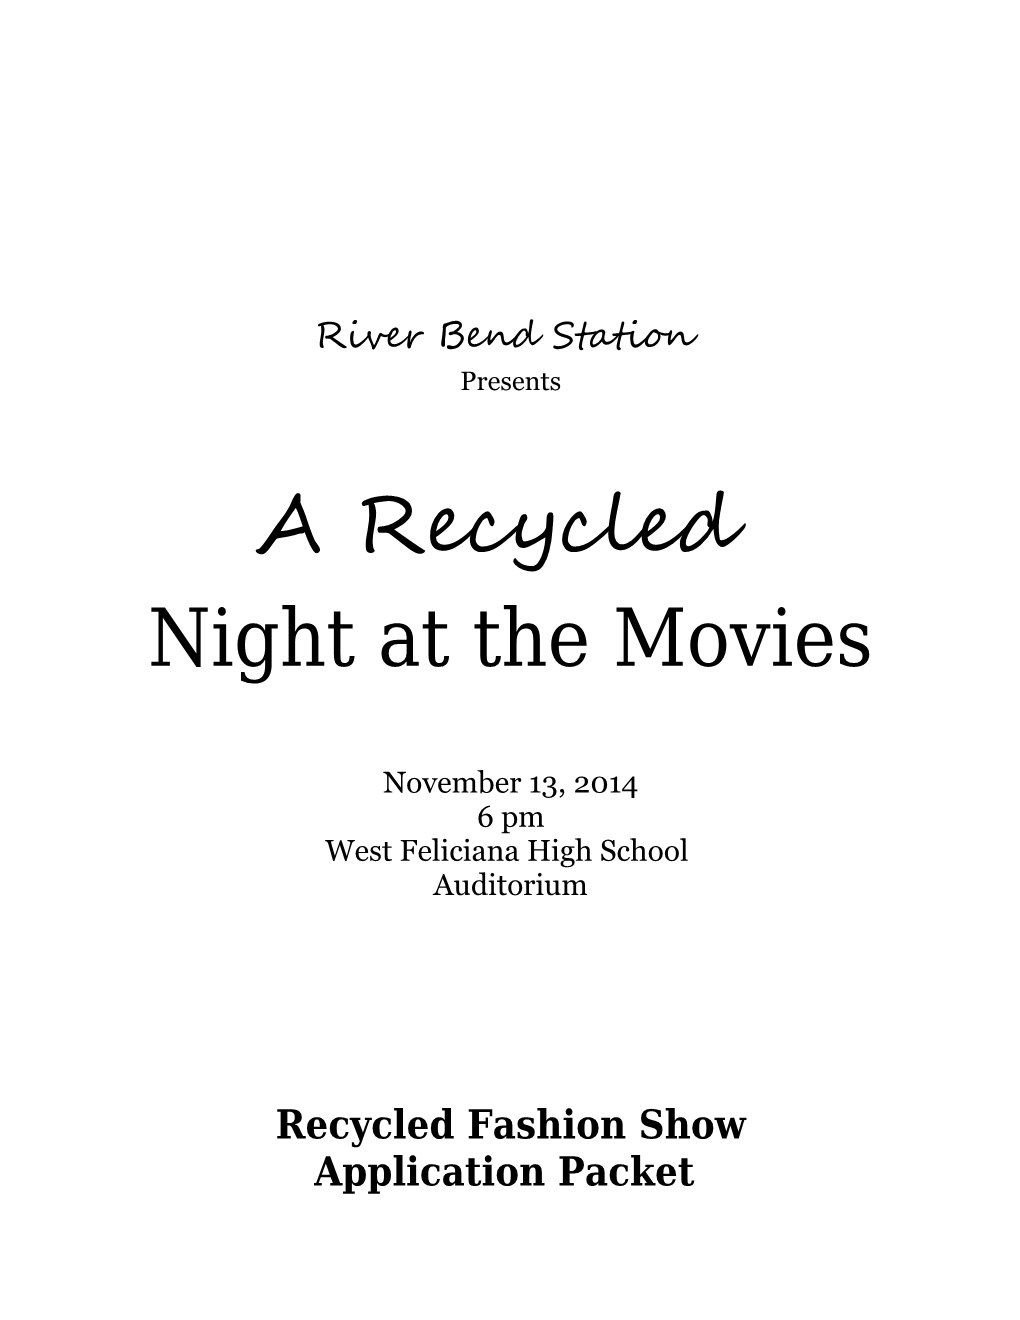 Recycling Fashion Show